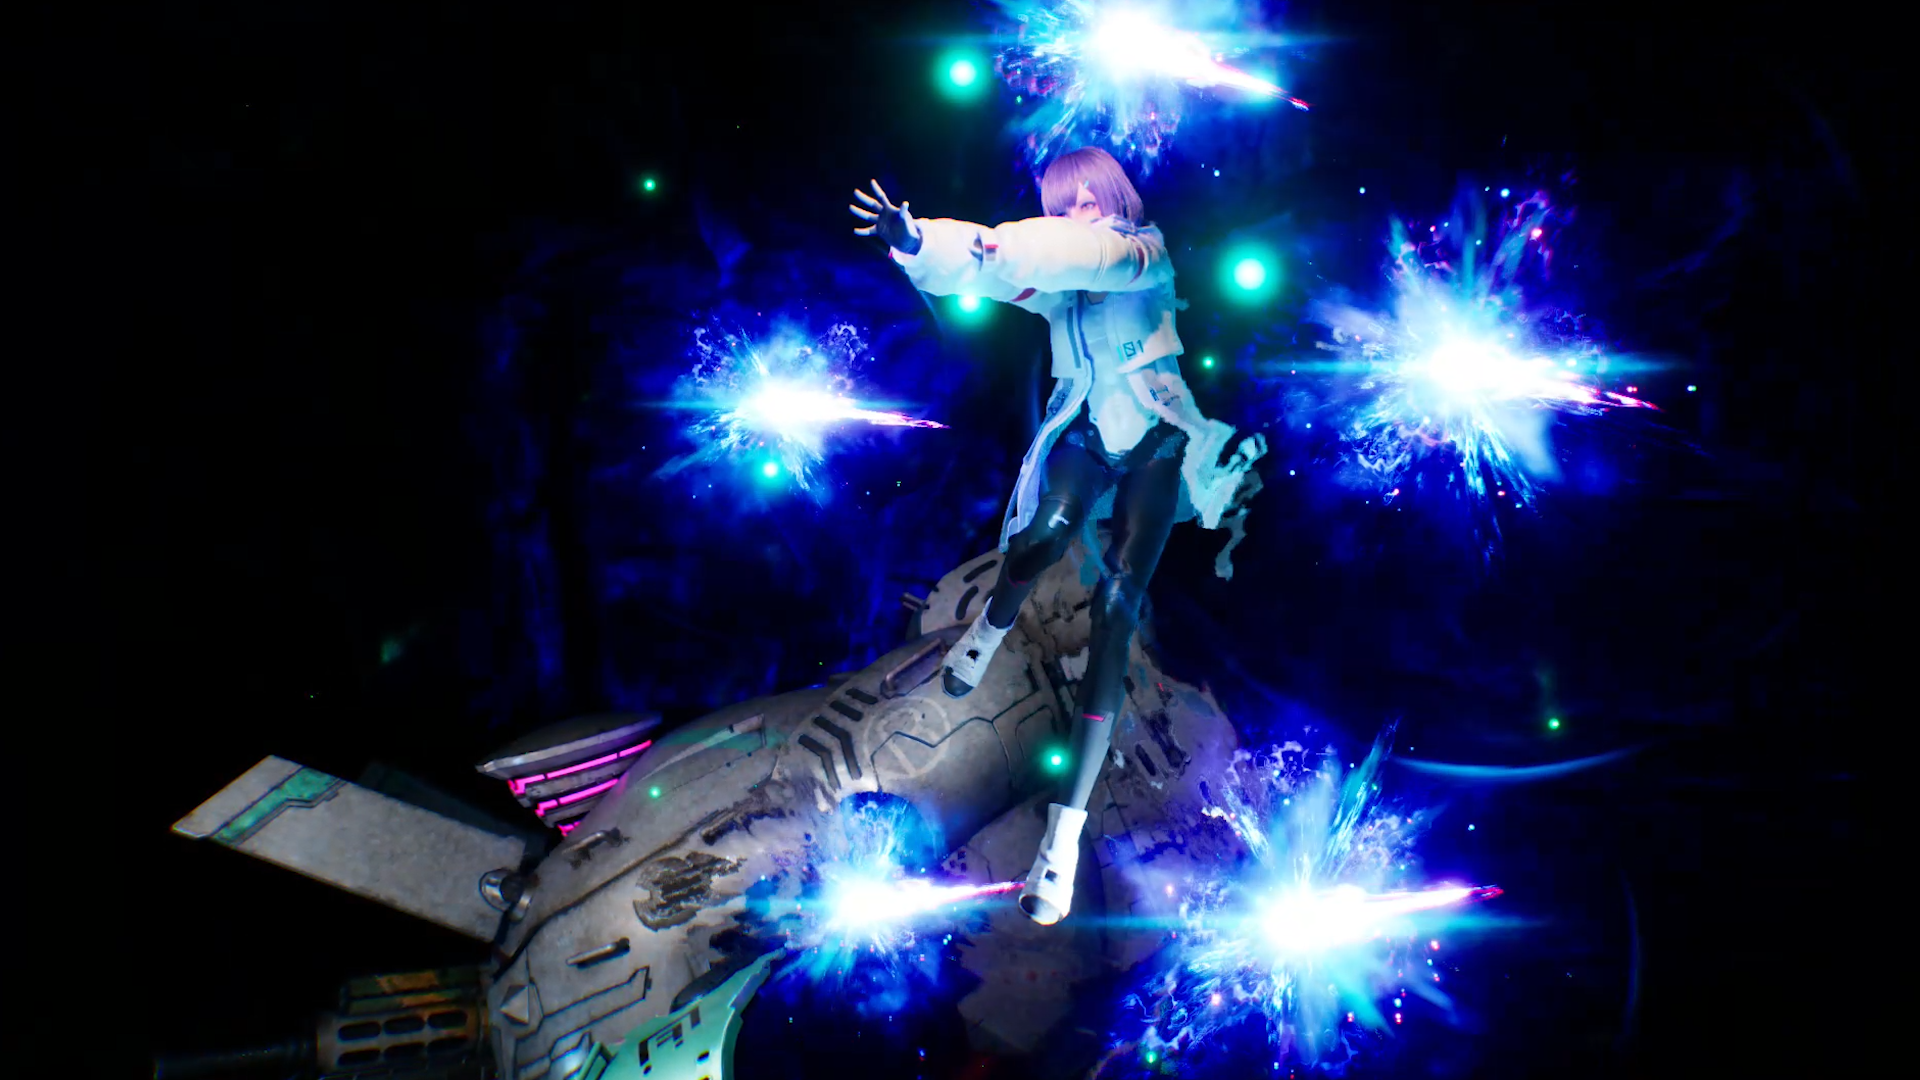 Personaje de anime femenino Magus de IA invoca orbes láser azules al lado de un mecha bípedo